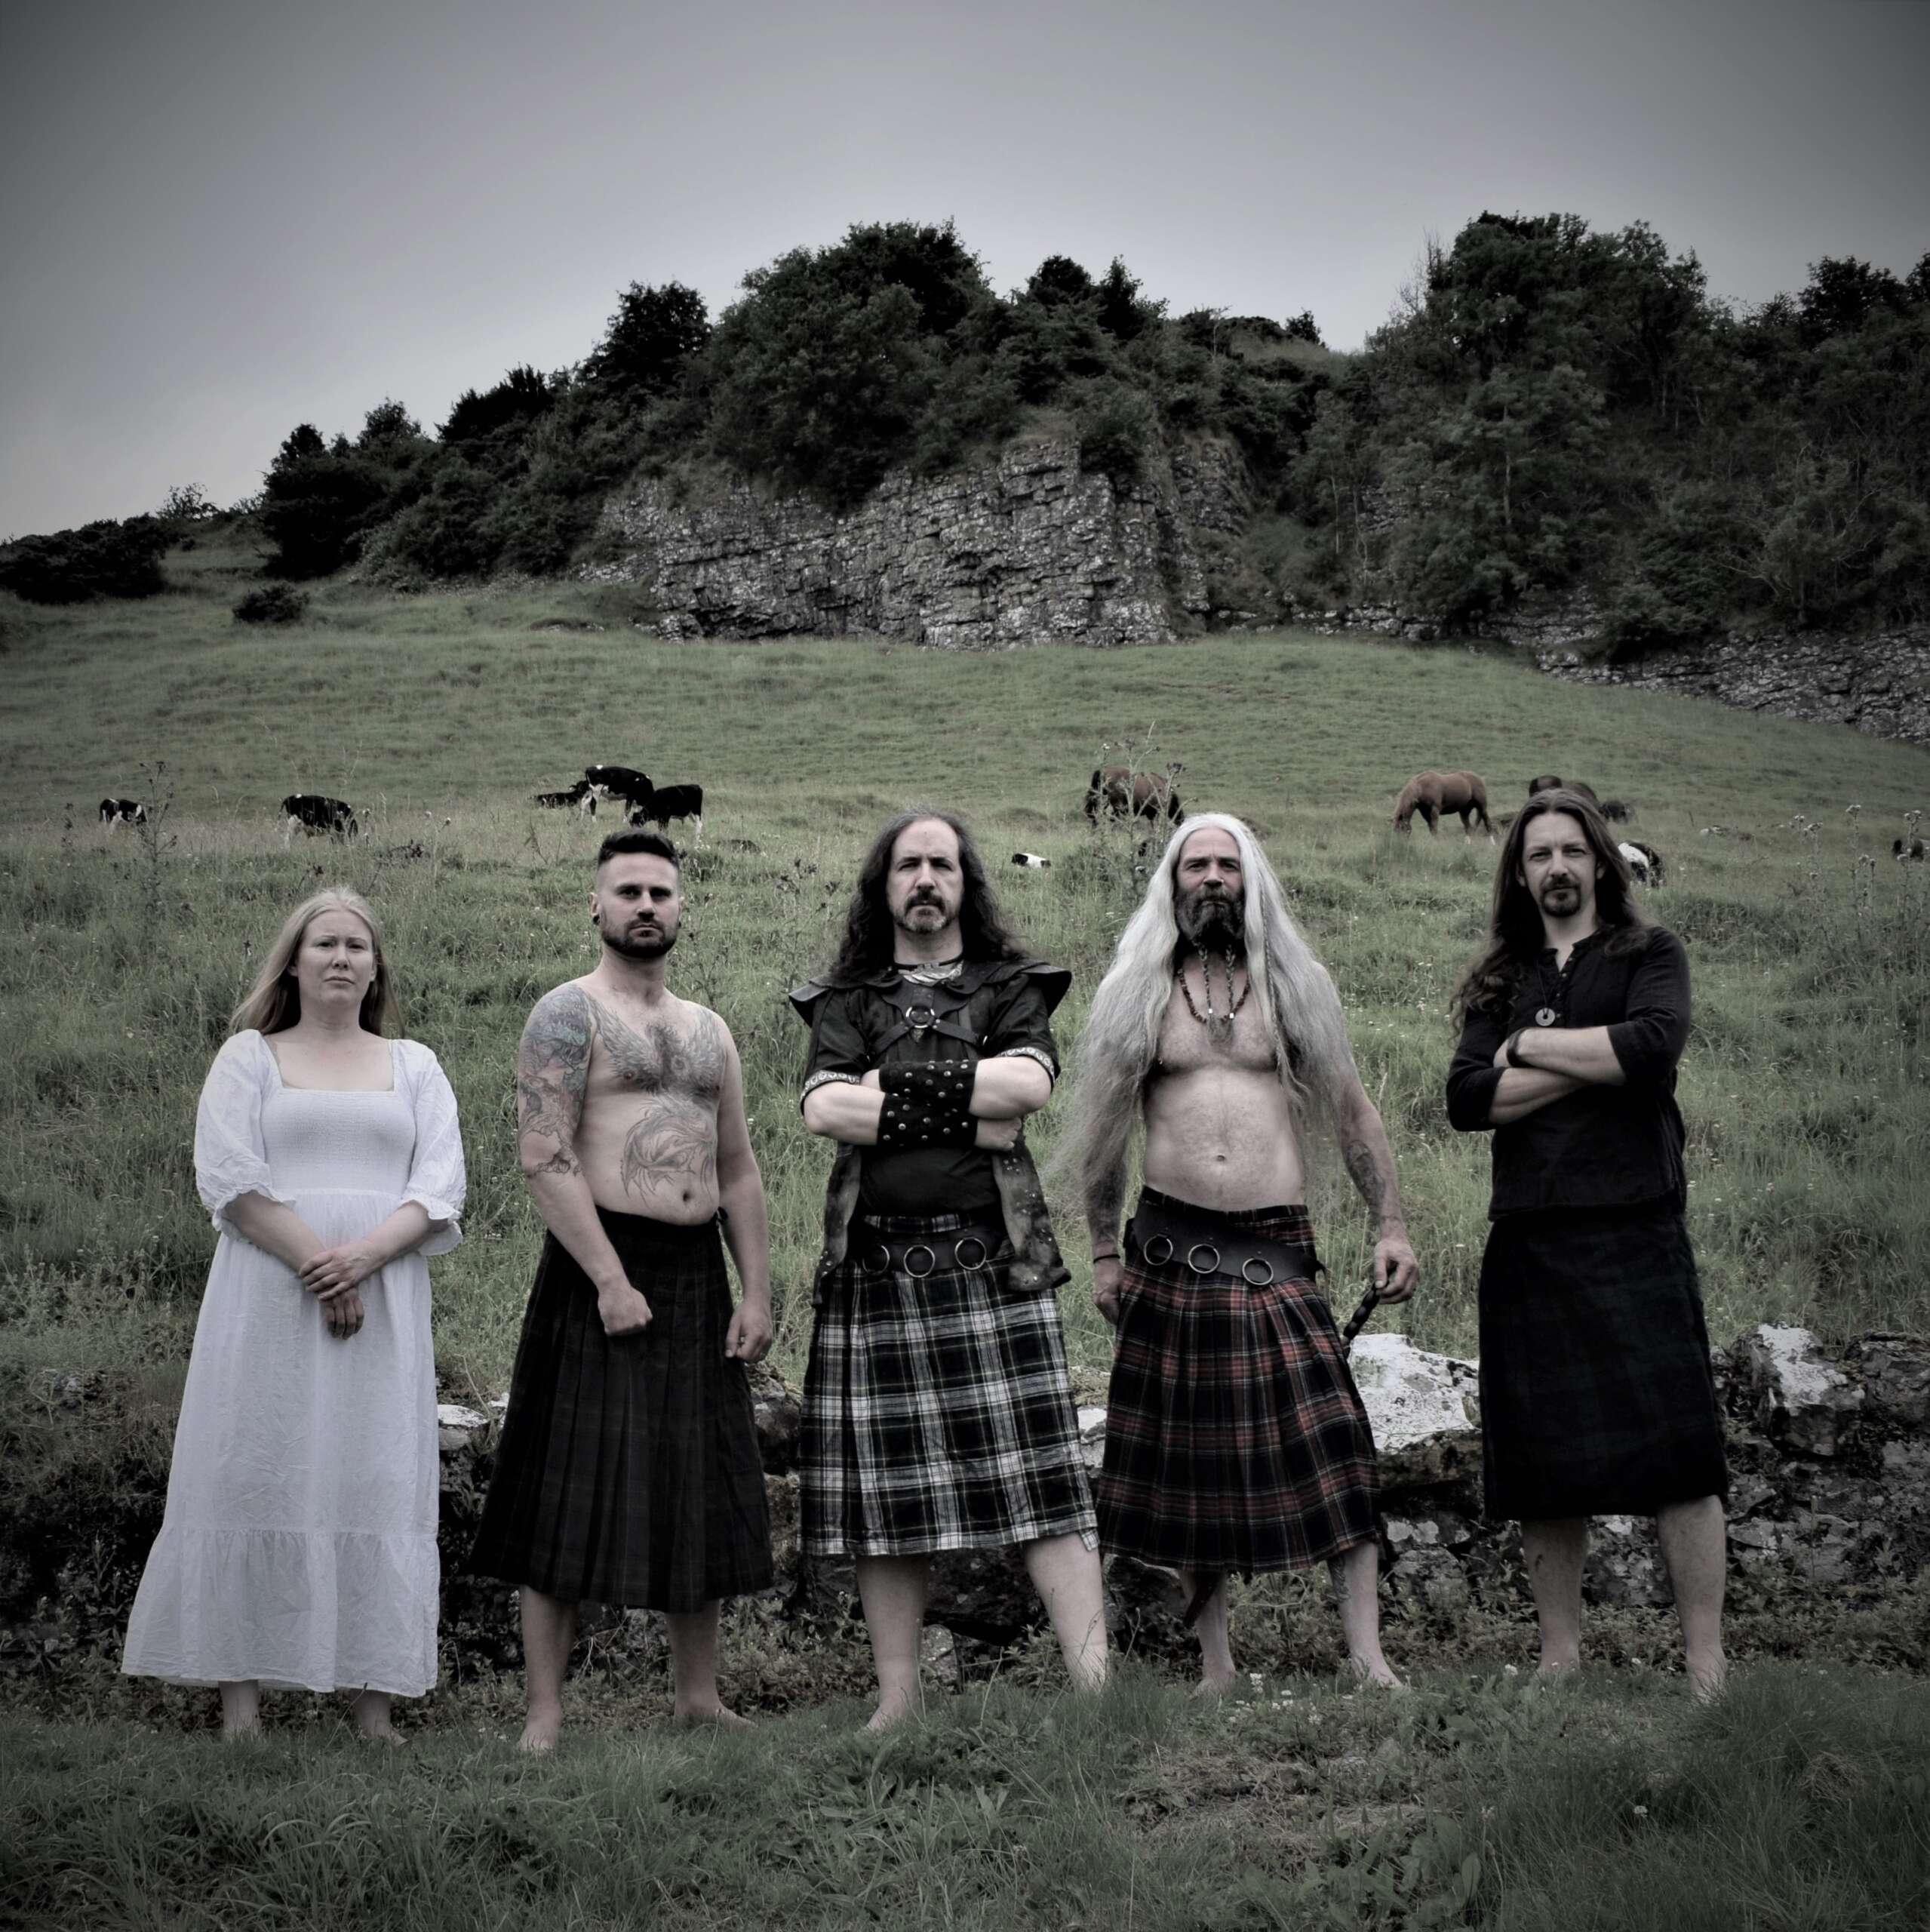 CRUACHAN – I pionieri irlandesi del folk metal pubblicano il video del nuovo singolo ‘The Crow’ con l’attore di “Harry Potter” Jon Campling